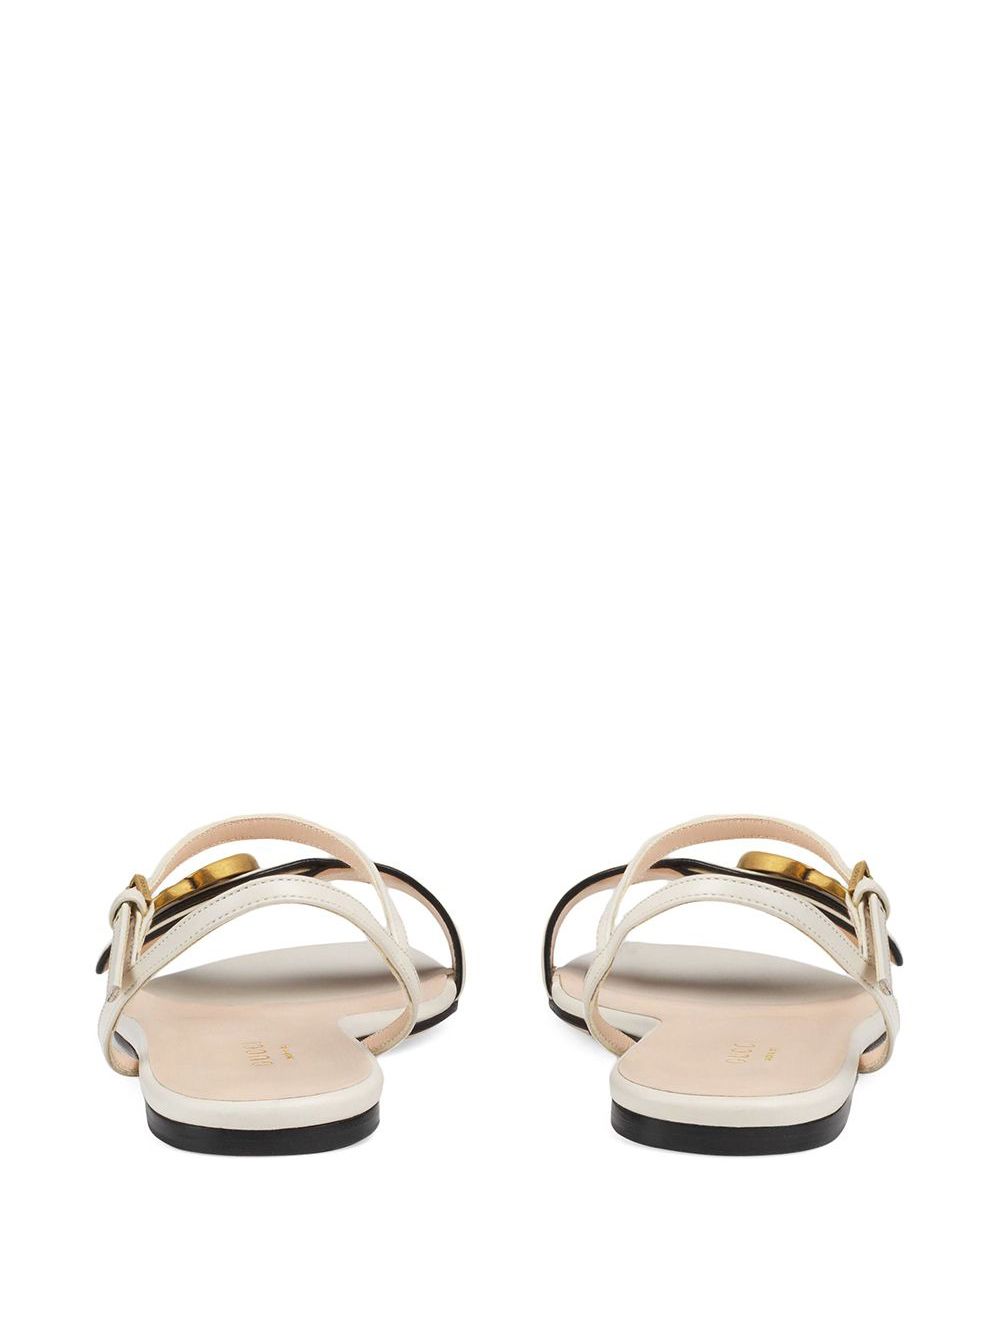 фото Gucci сандалии с логотипом double g